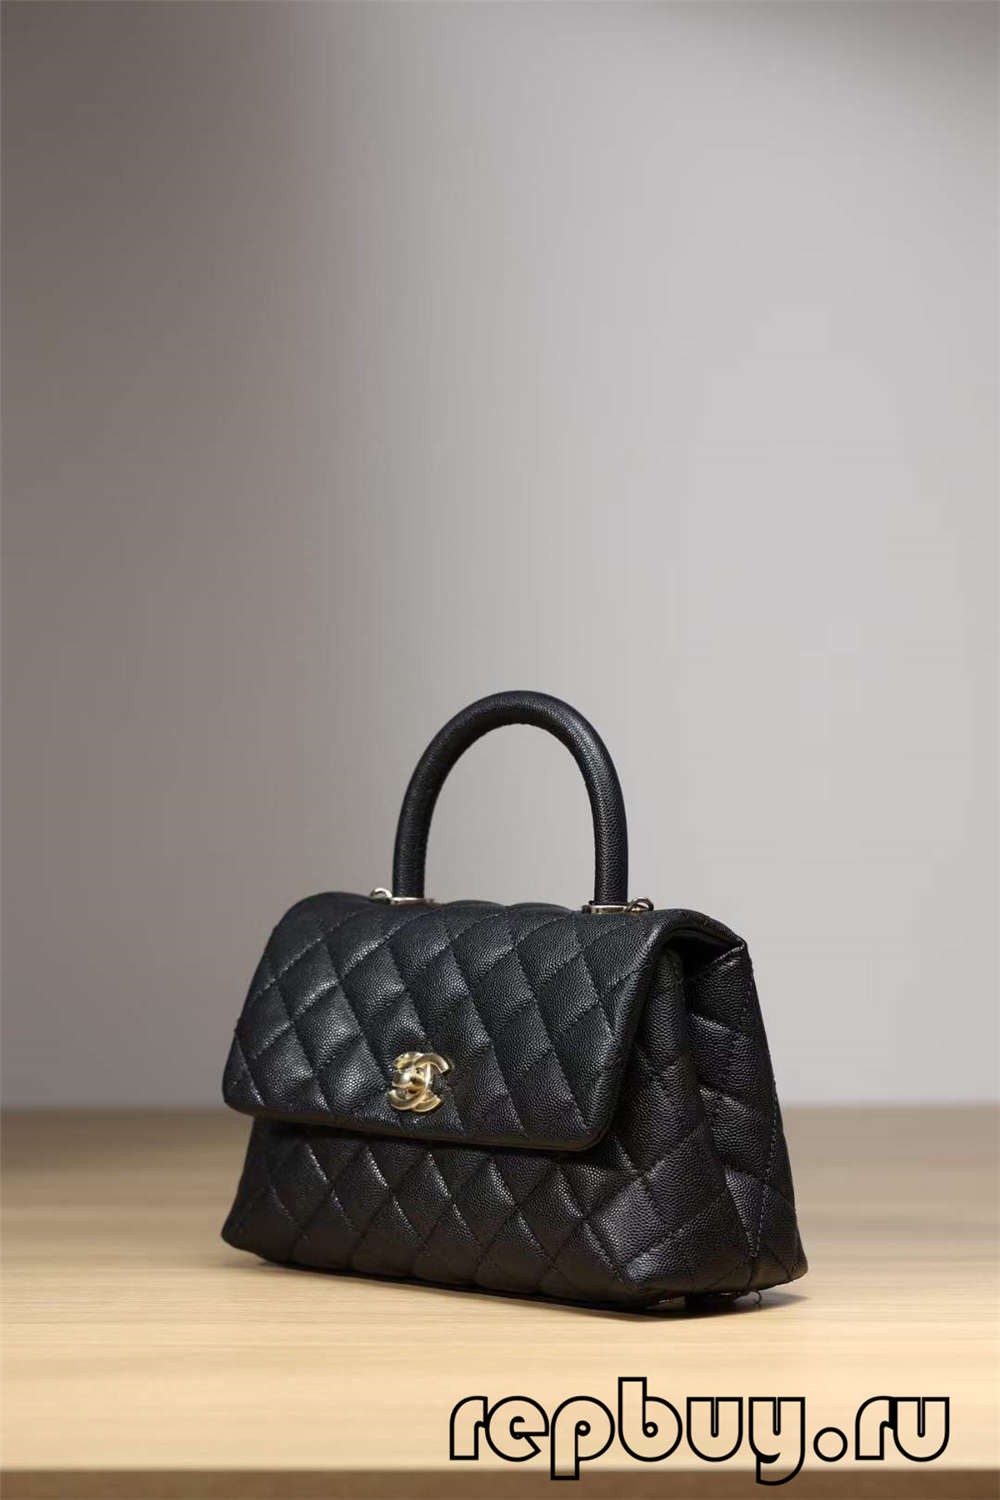 Najvyššia replika kabelky Chanel Coco Handle Black Gold so sponou (aktualizované v roku 2022) – online obchod s falošnou taškou Louis Vuitton najvyššej kvality, replika značkovej tašky ru